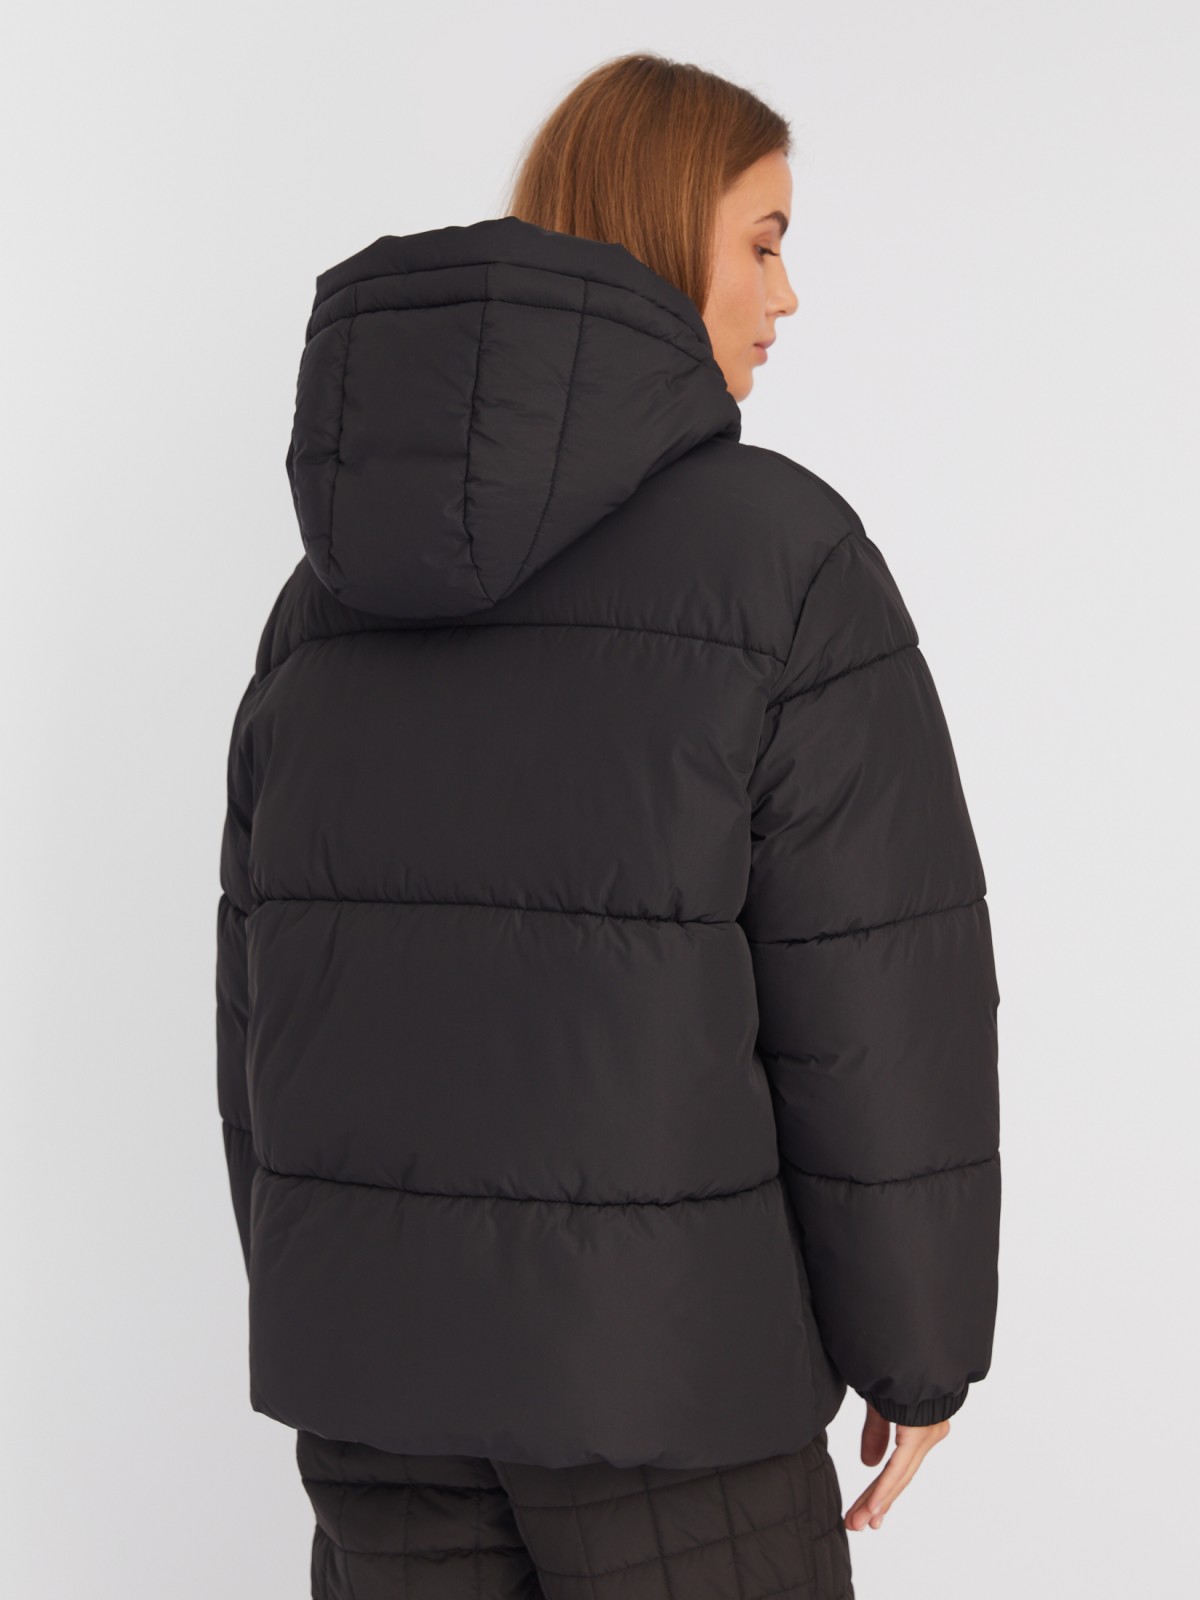 Тёплая дутая куртка с капюшоном и кулиской zolla 02342510L064, цвет черный, размер XS - фото 6